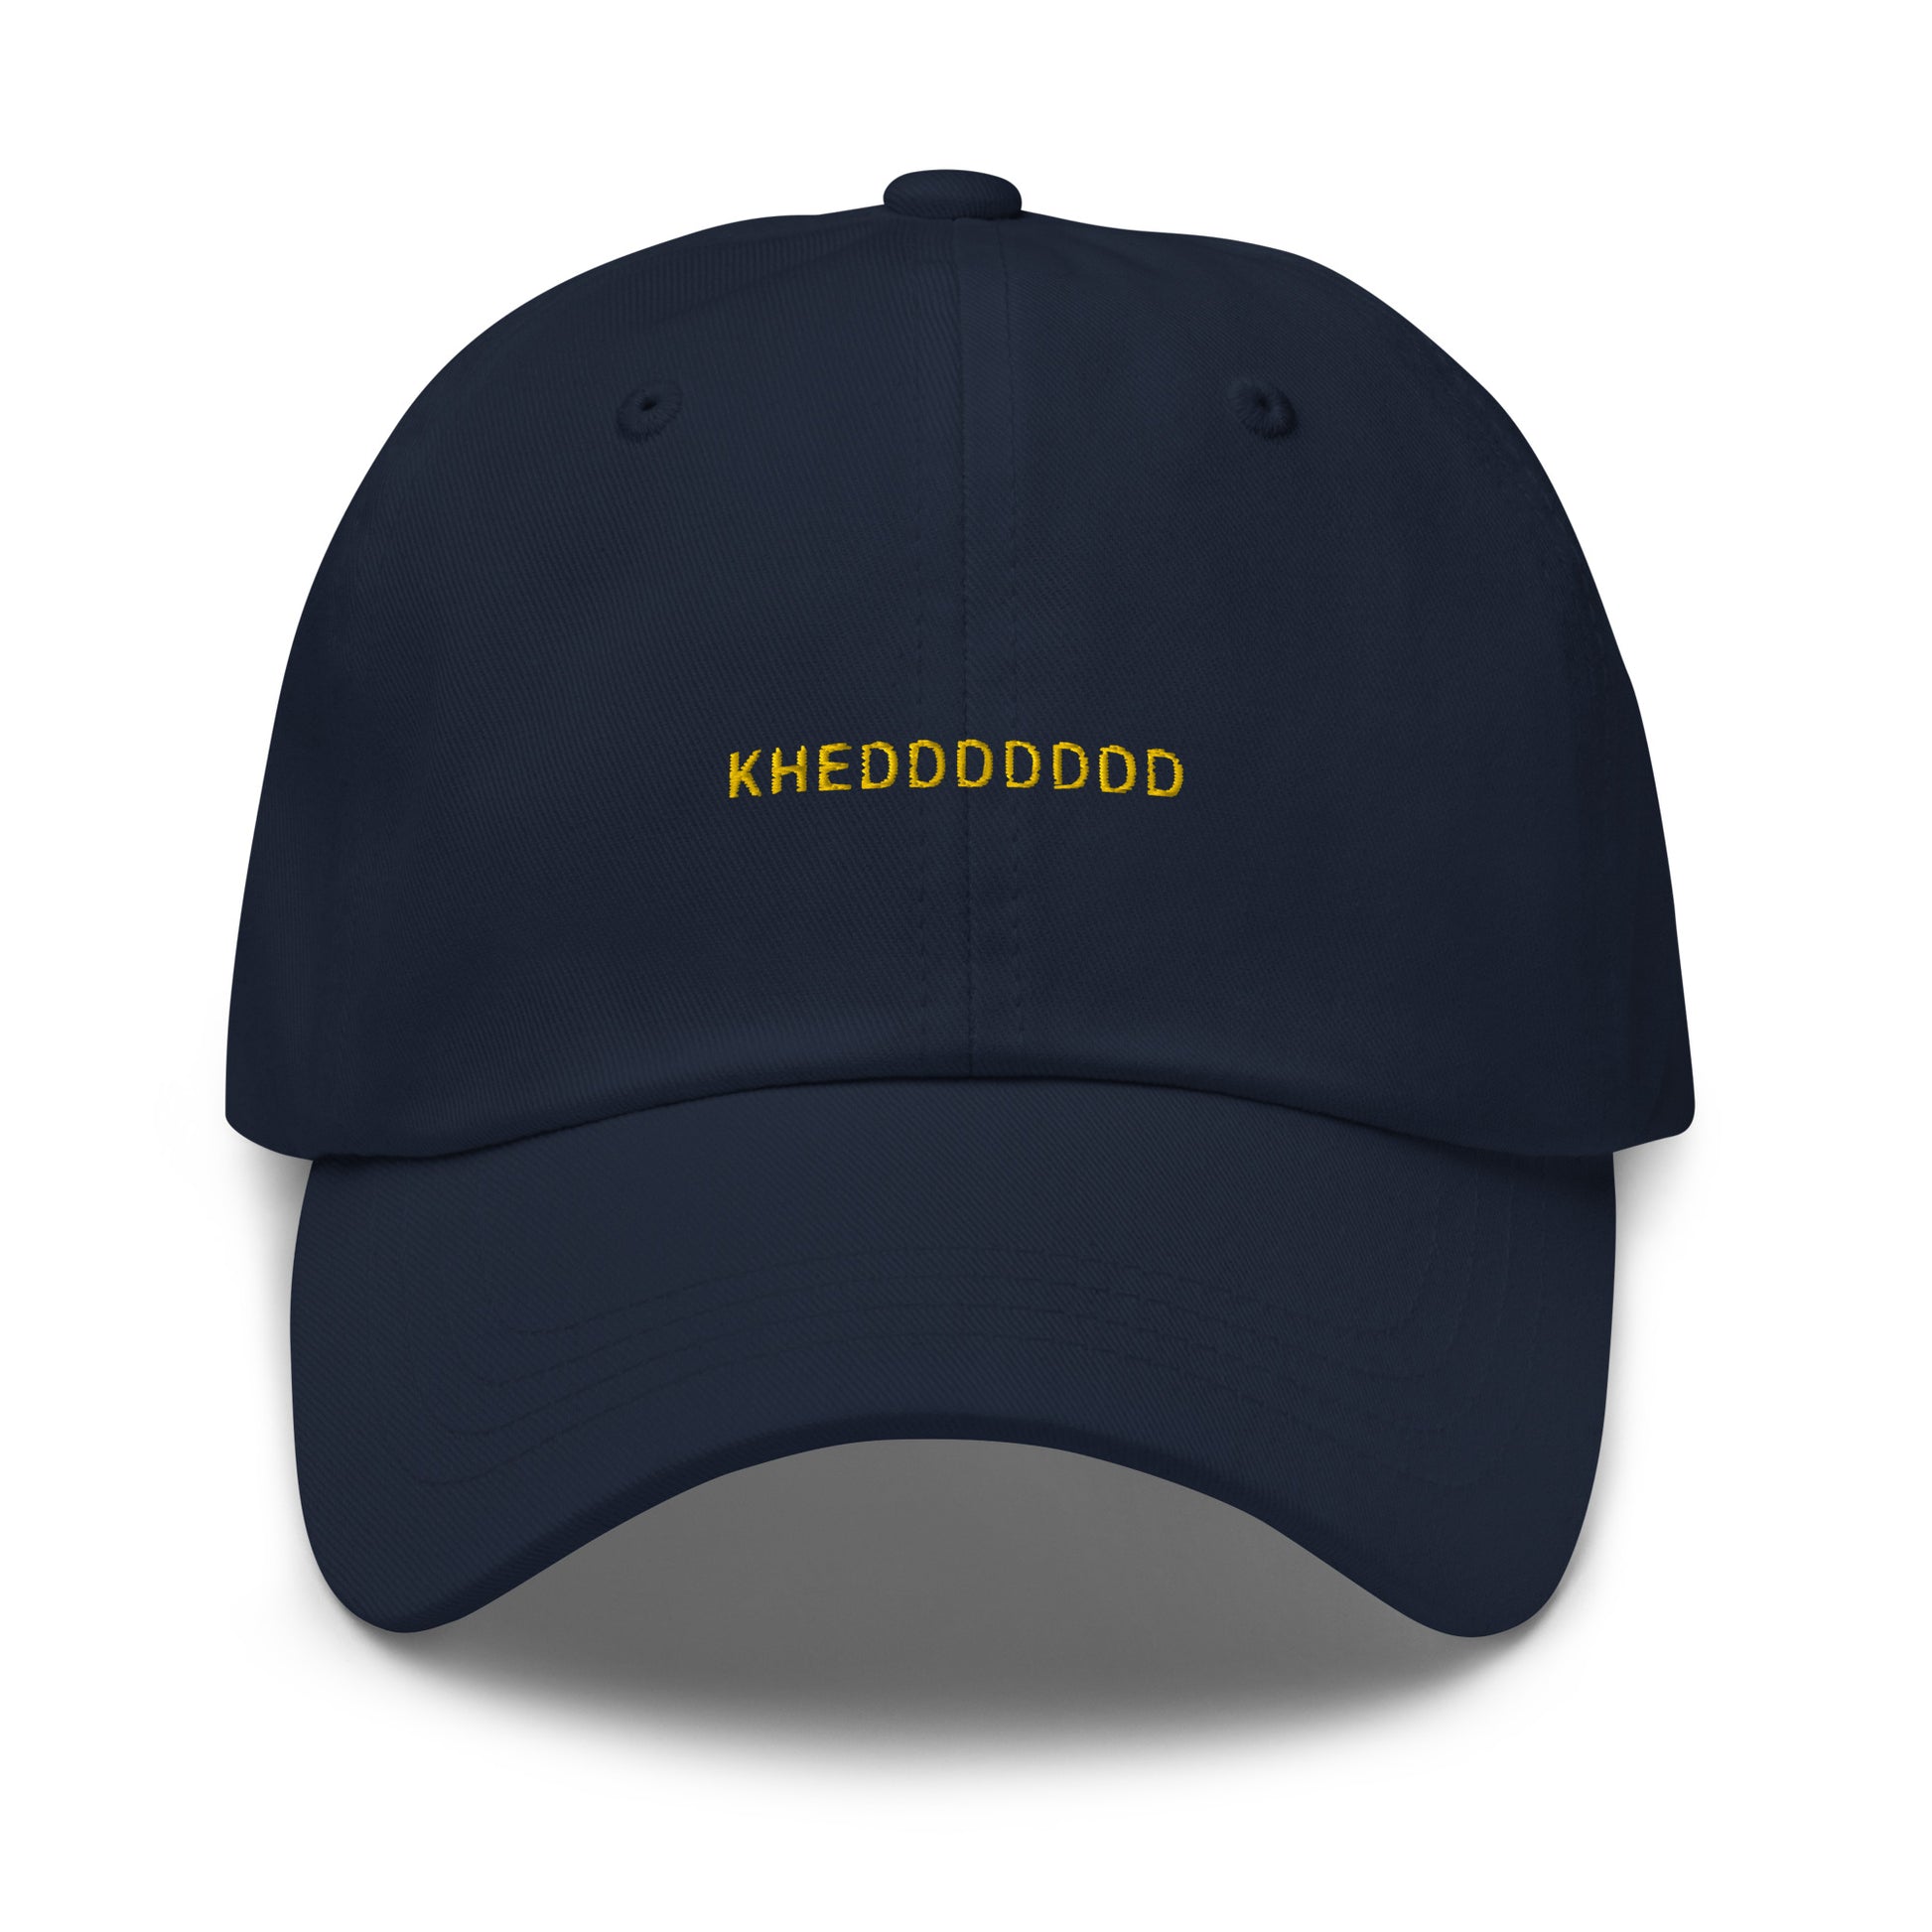 navy hat that says "khedddddd" in gold lettering